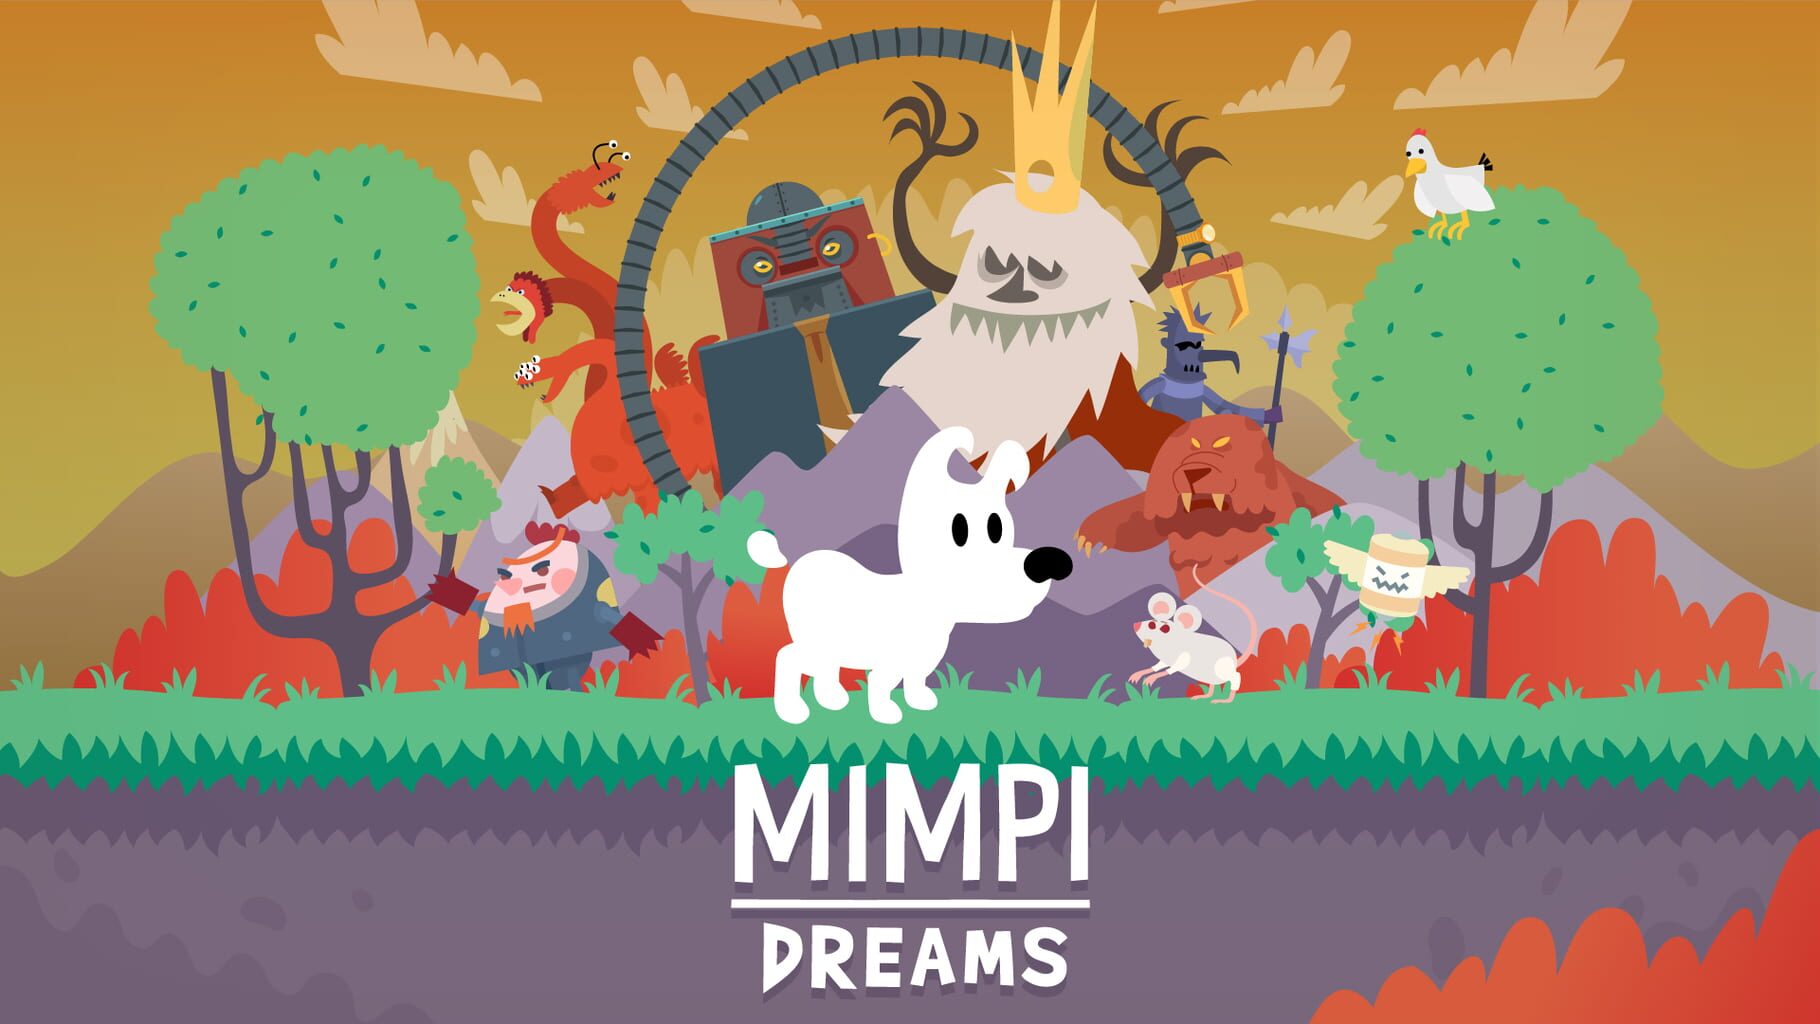 Mimpi Dreams artwork